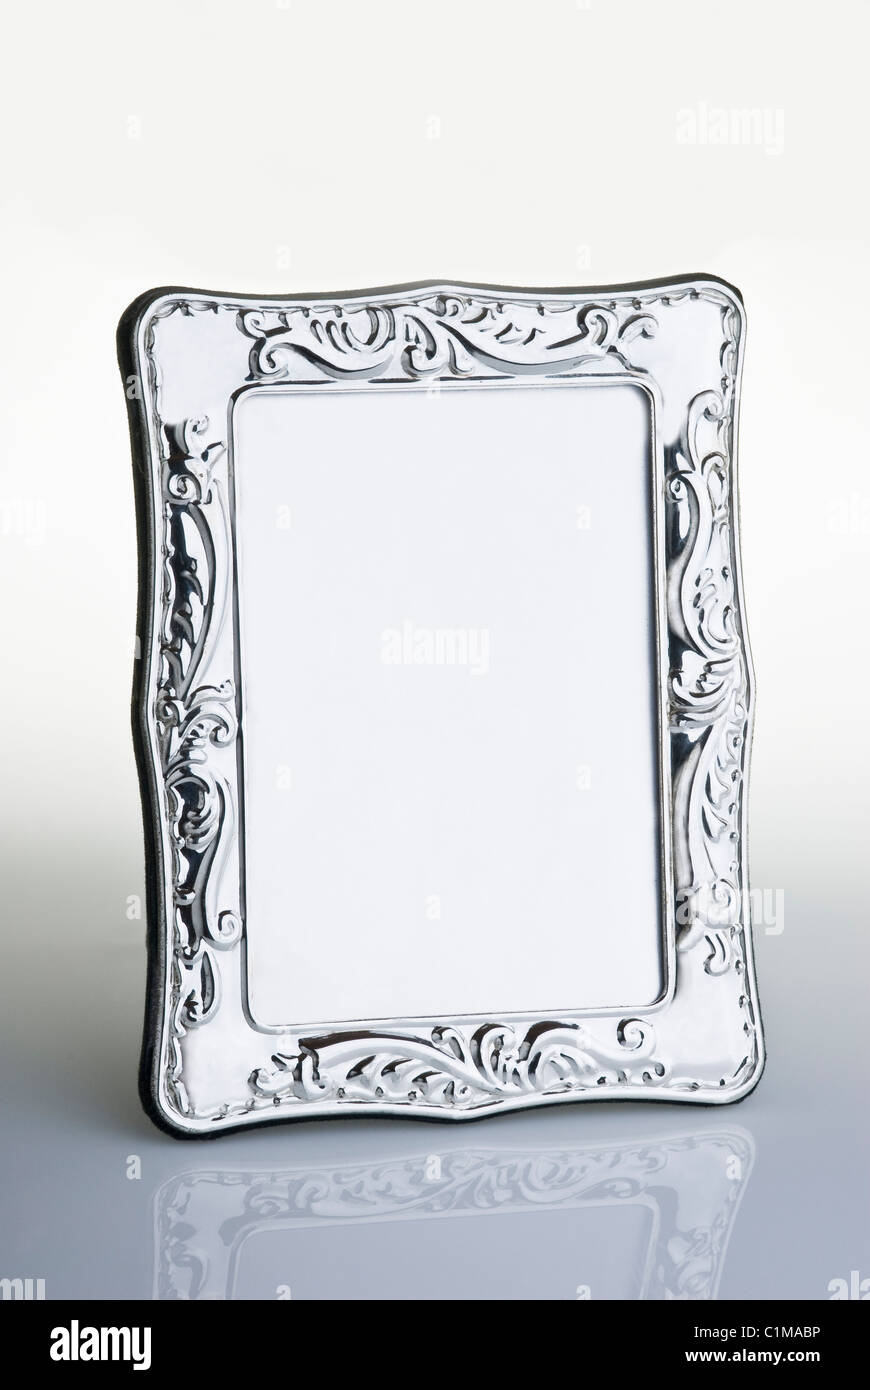 Silver photograph frame. Stock Photo